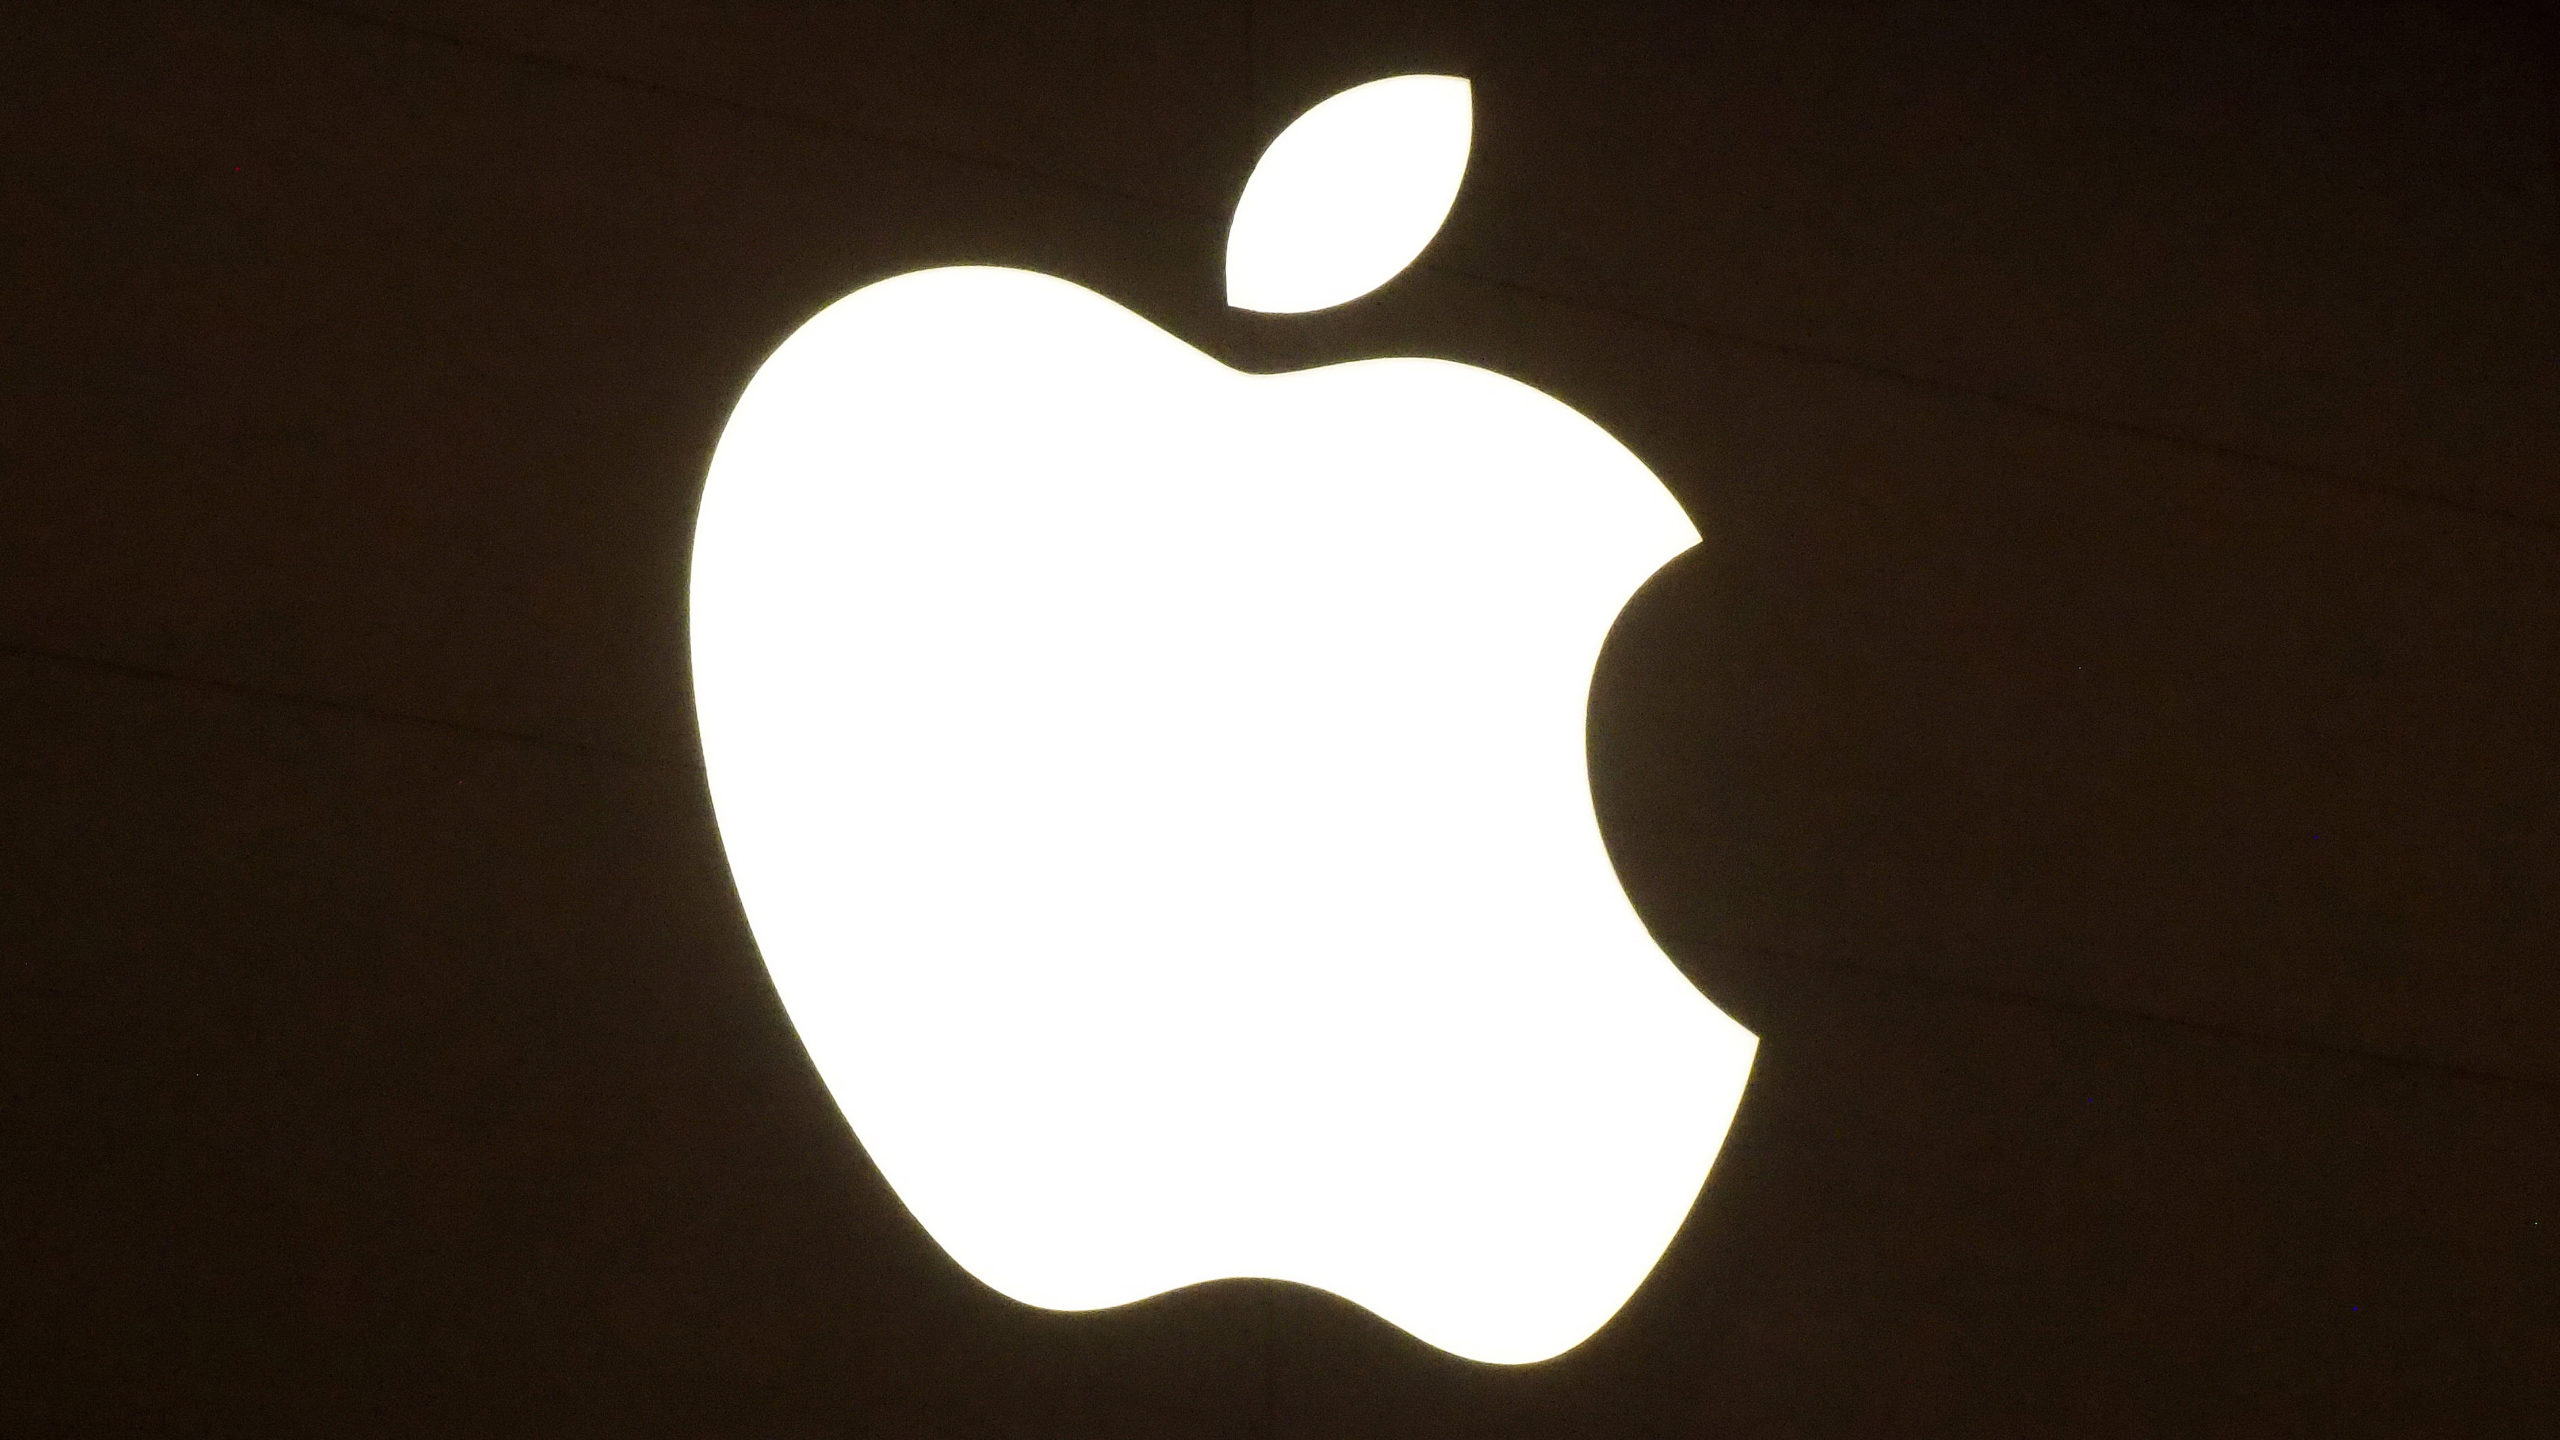 Ventas de iPhone 12 impulsan beneficios de Apple hasta 81,430 mdd